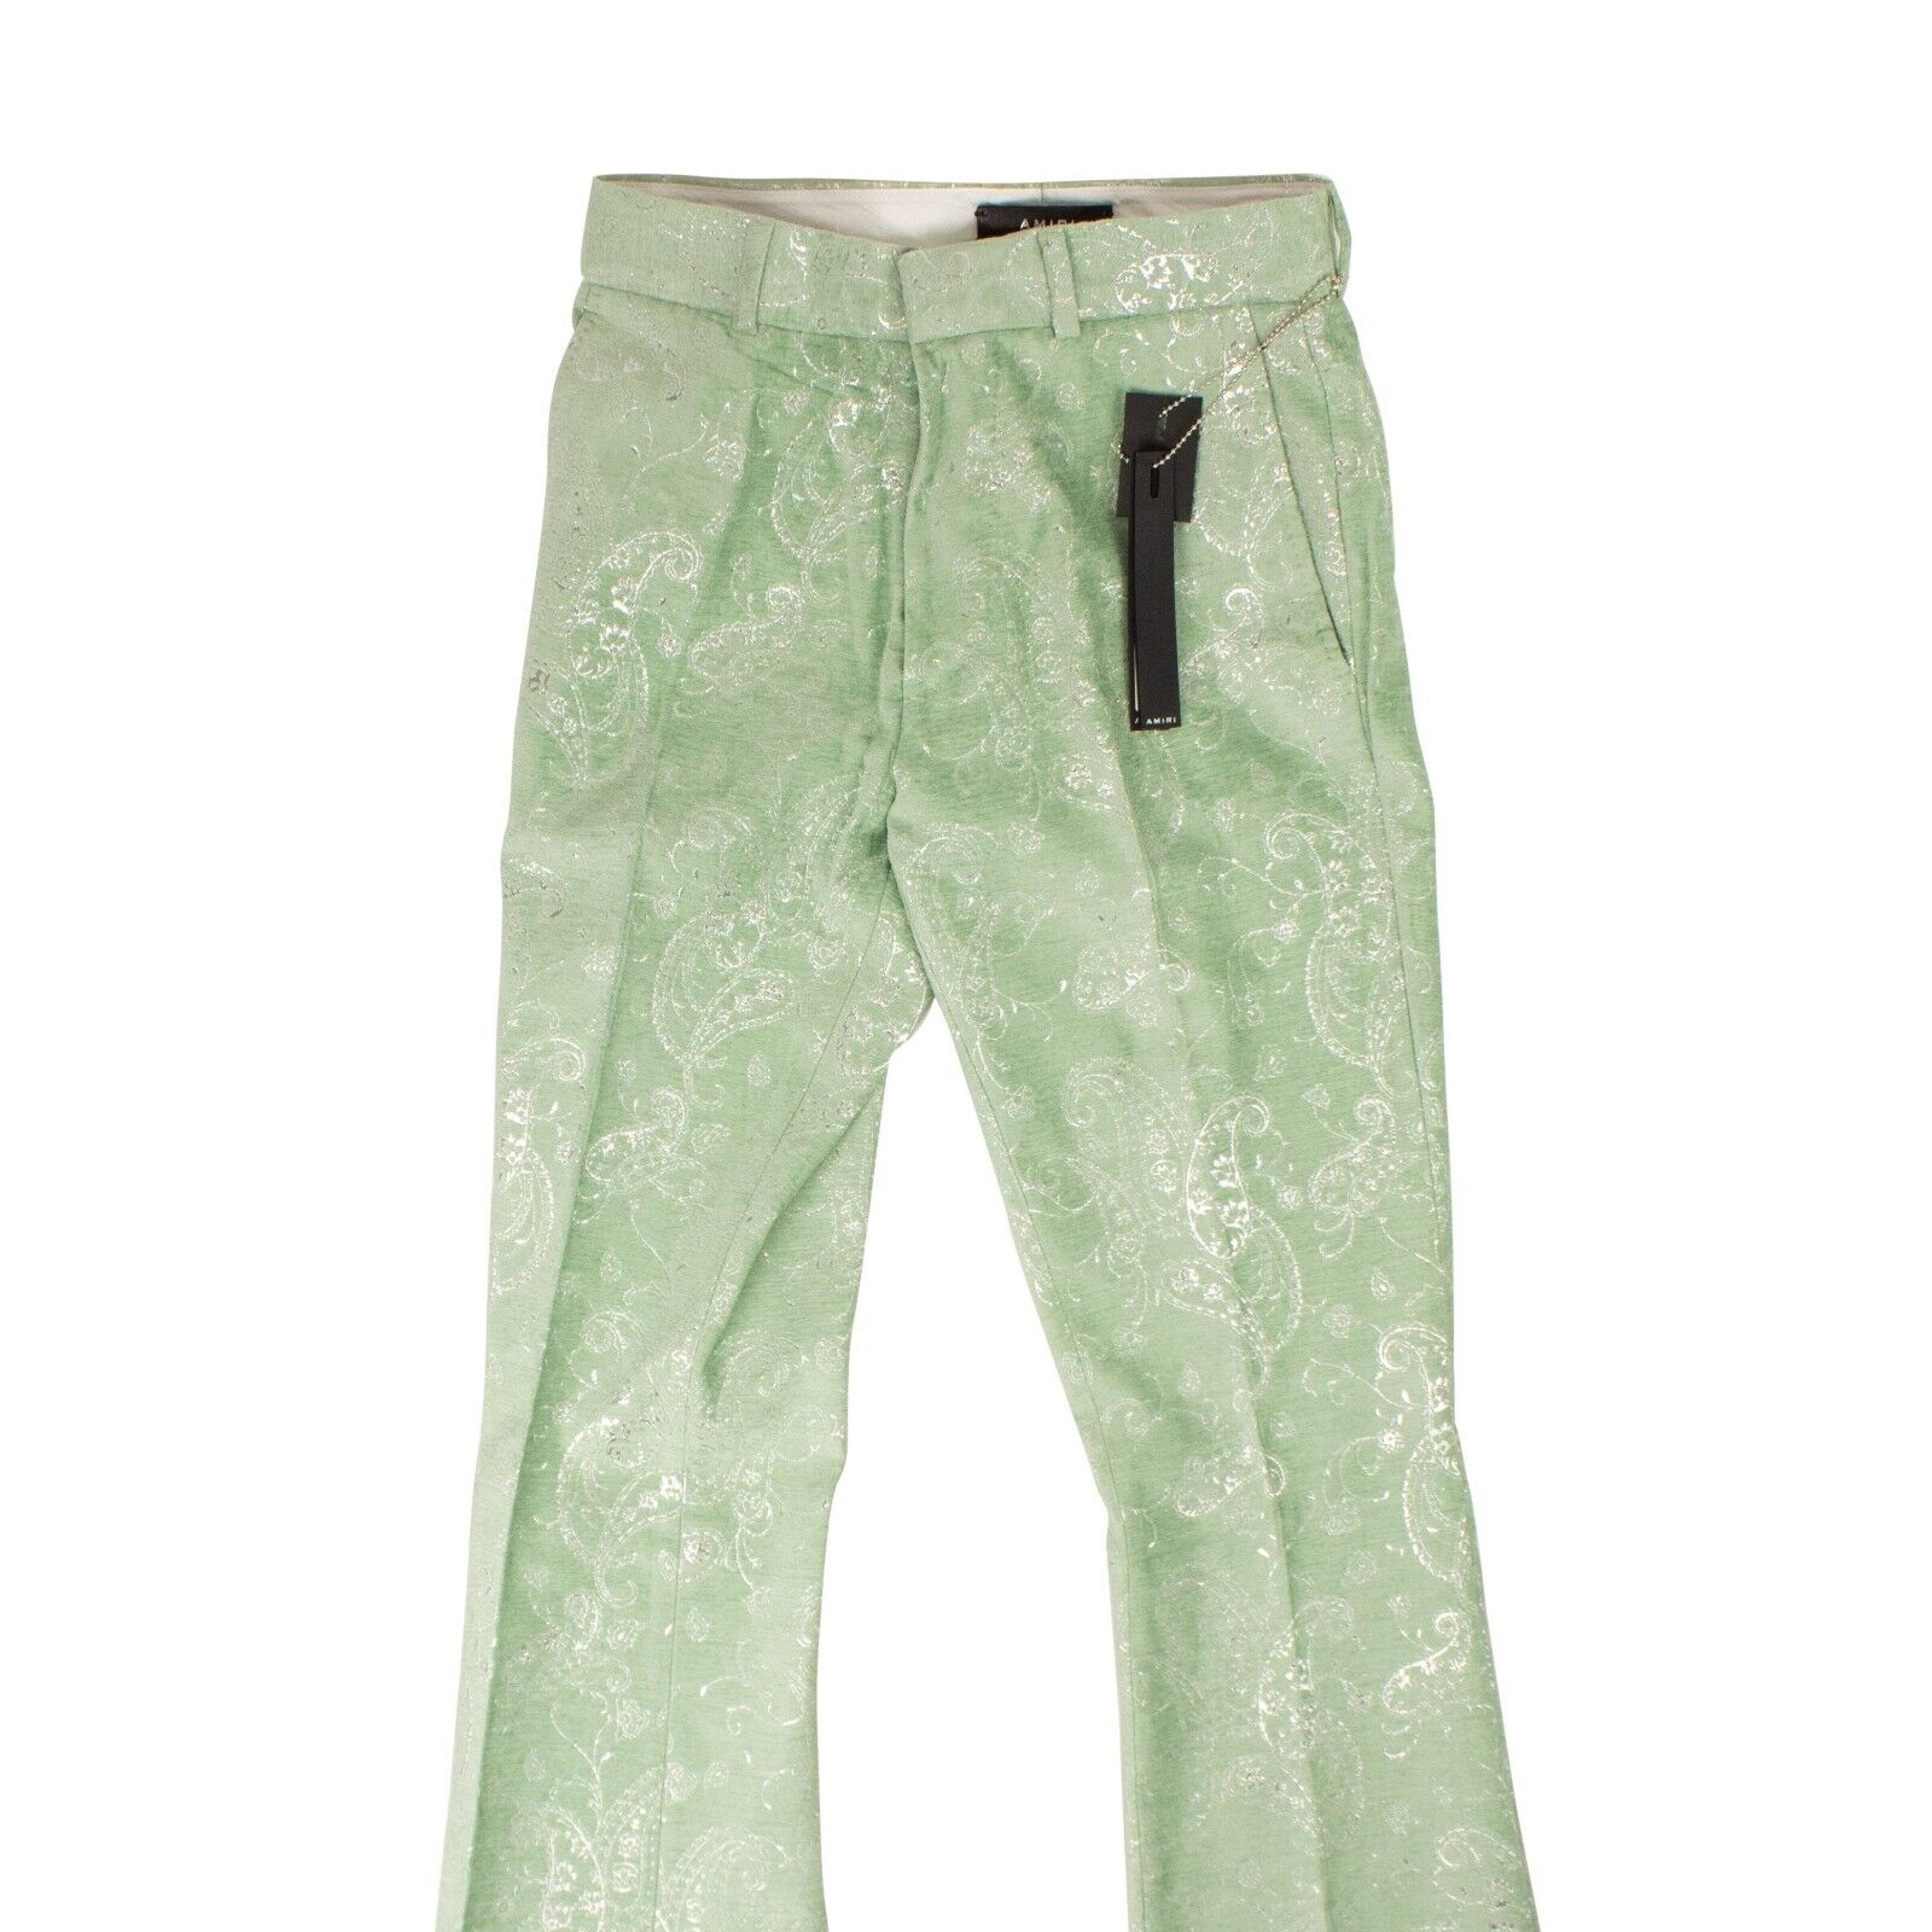 Alternate View 1 of Green Paisley Velvet Glitter Pants